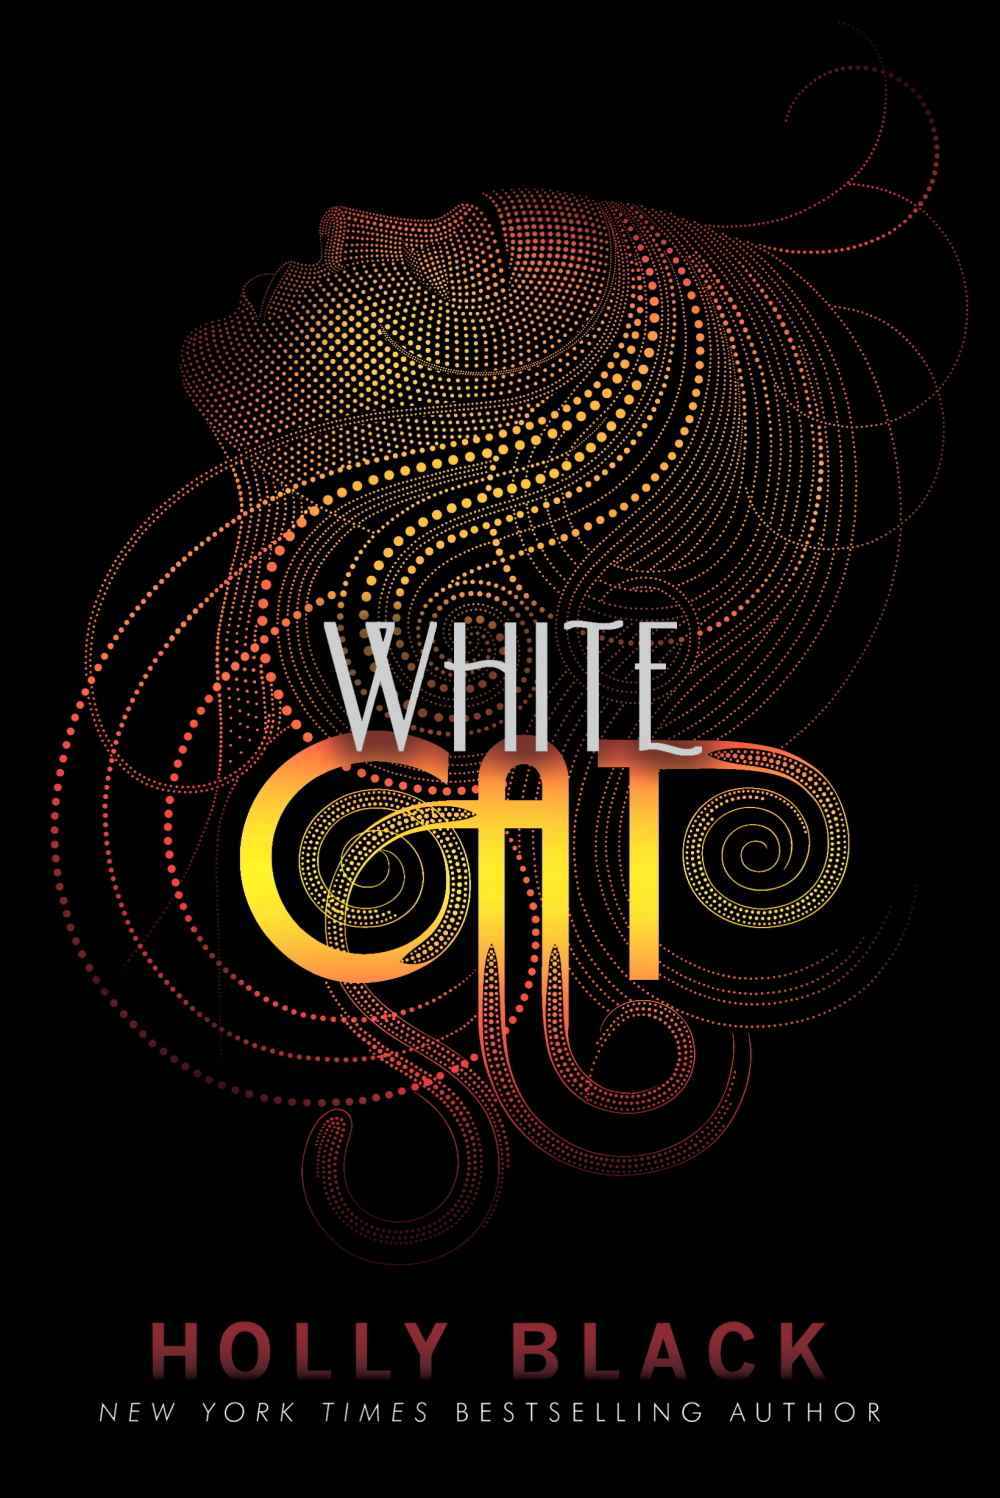 Cover des Buches "White Cat" von Holly Black